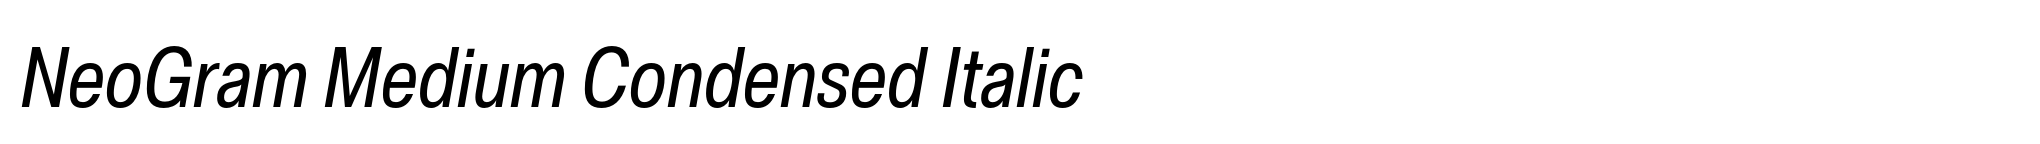 NeoGram Medium Condensed Italic image